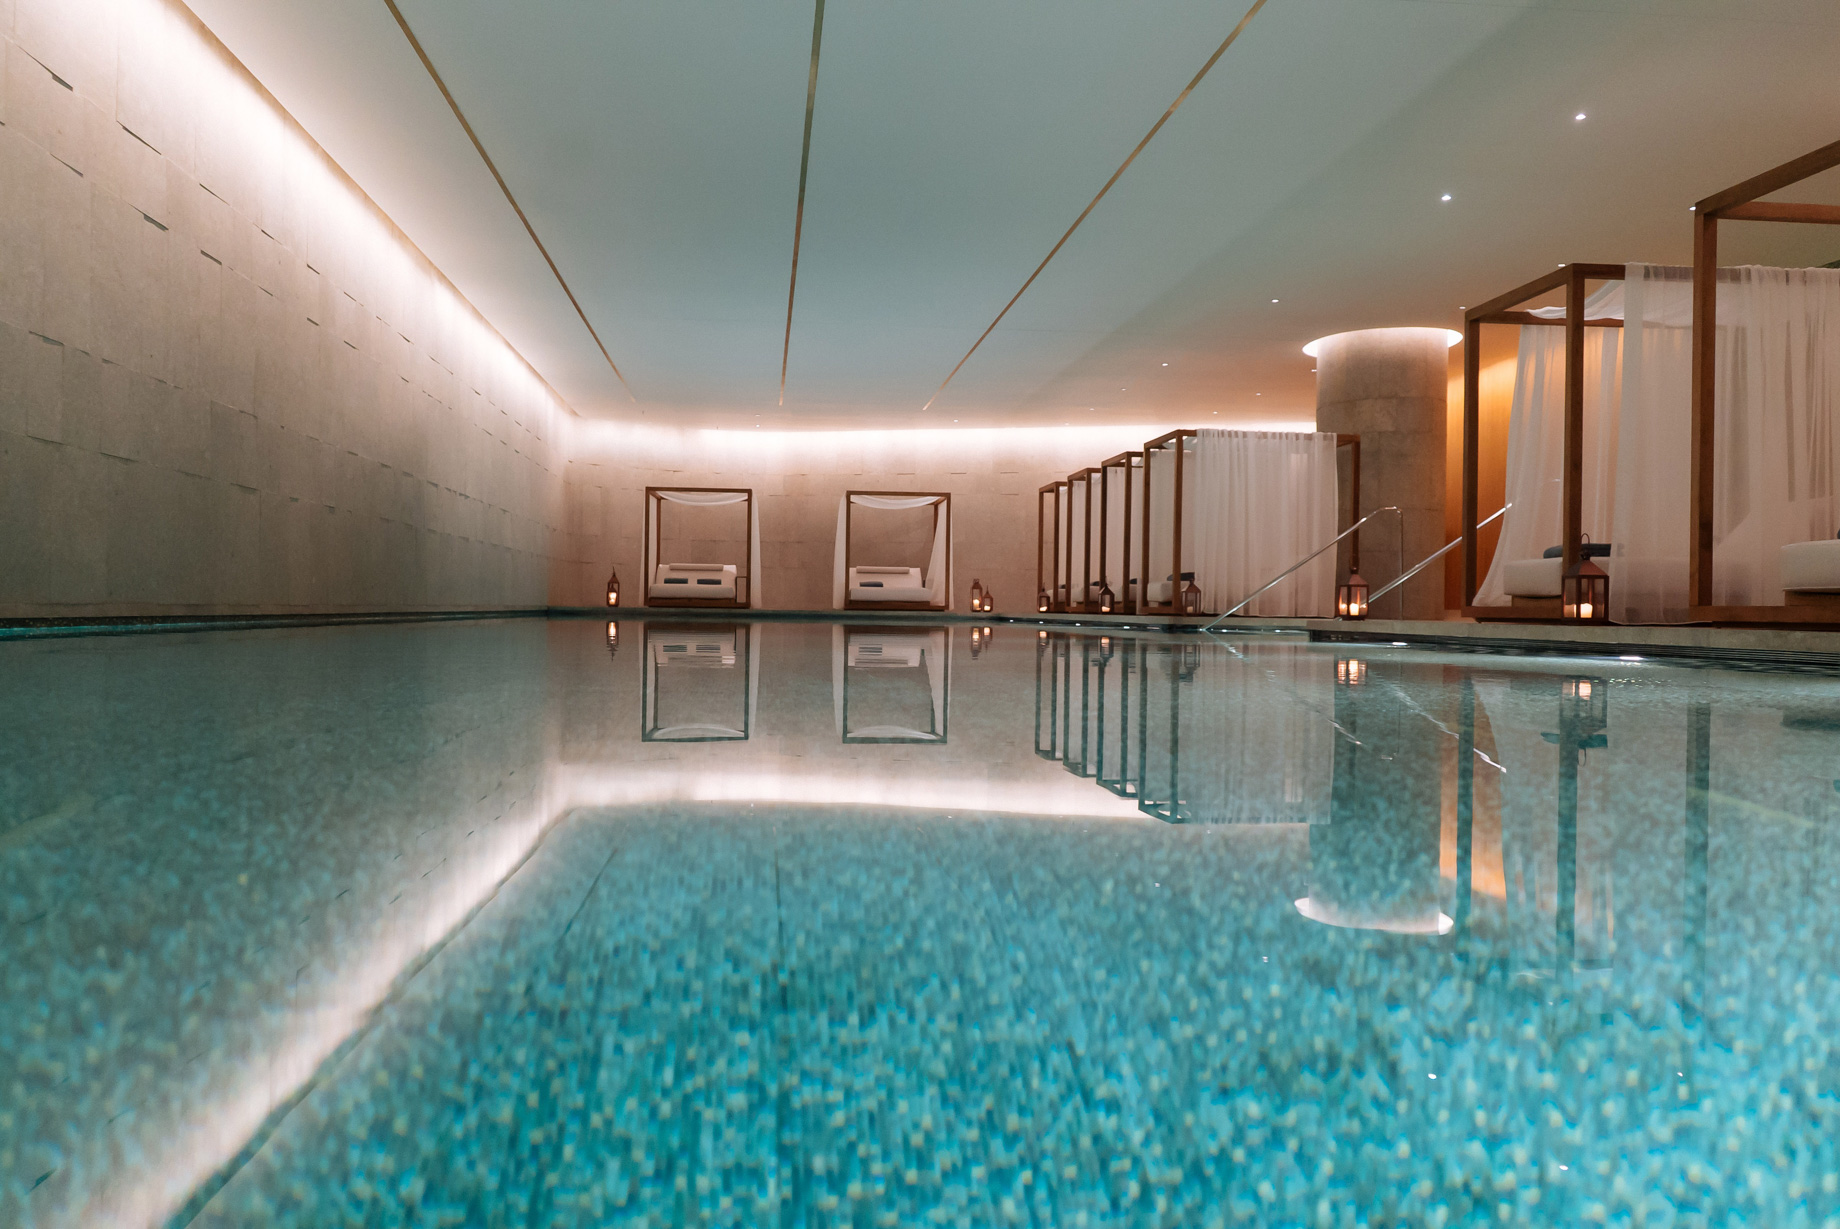 Bvlgari Hotel Beijing - Beijing, China - Swimming Pool with Private Cabanas